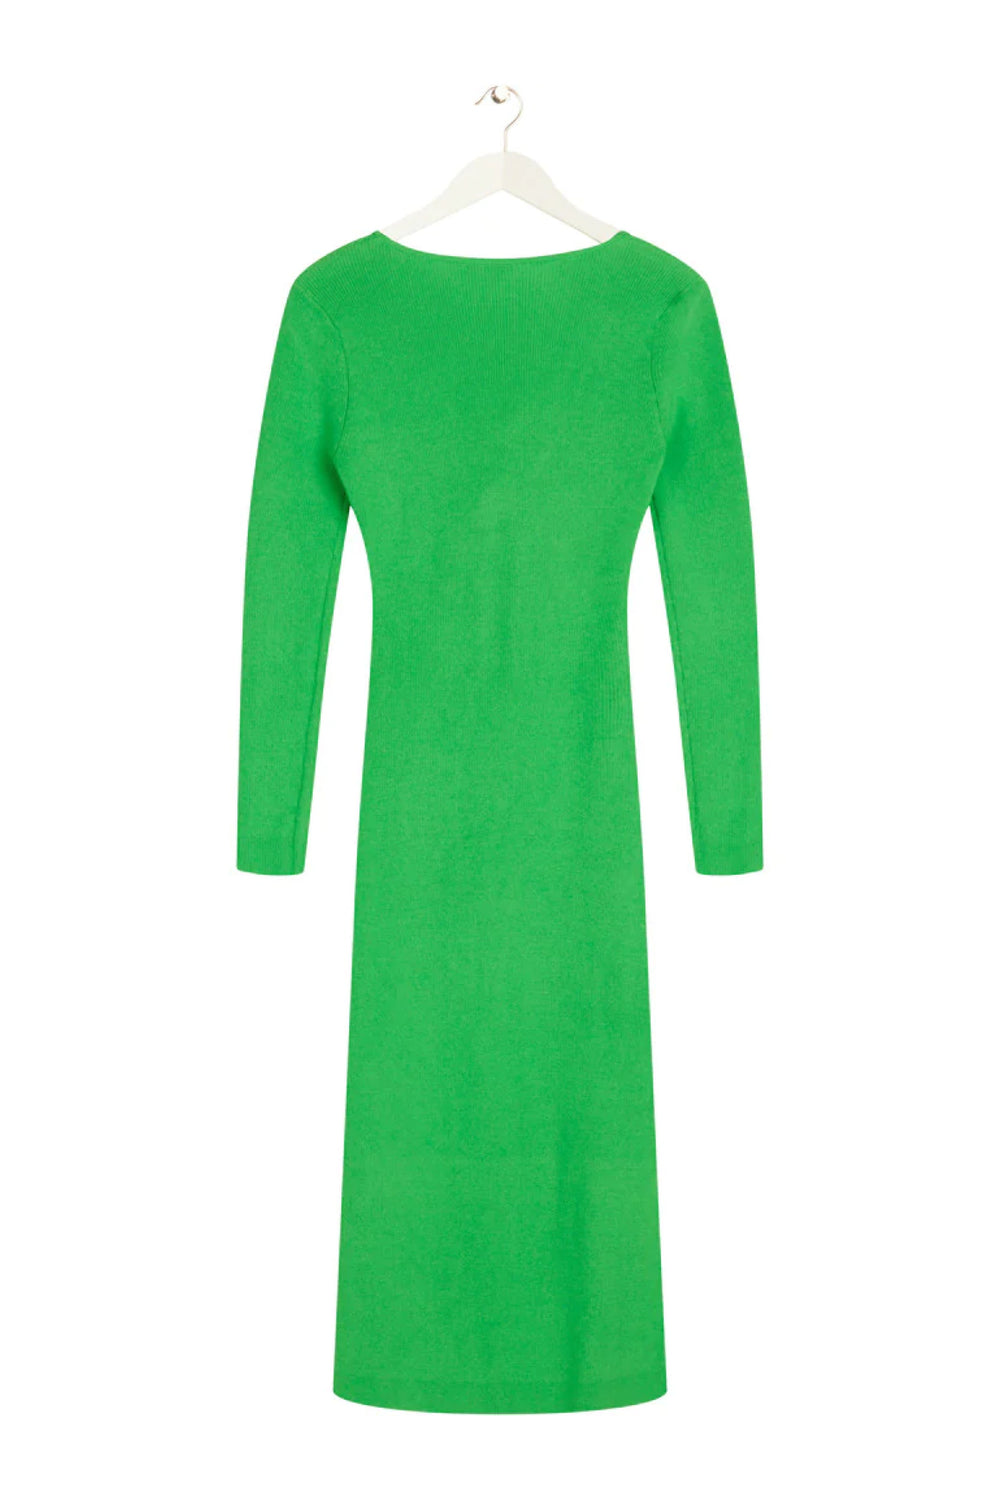 BZR LelaBZJenner dress Dress Green Flash